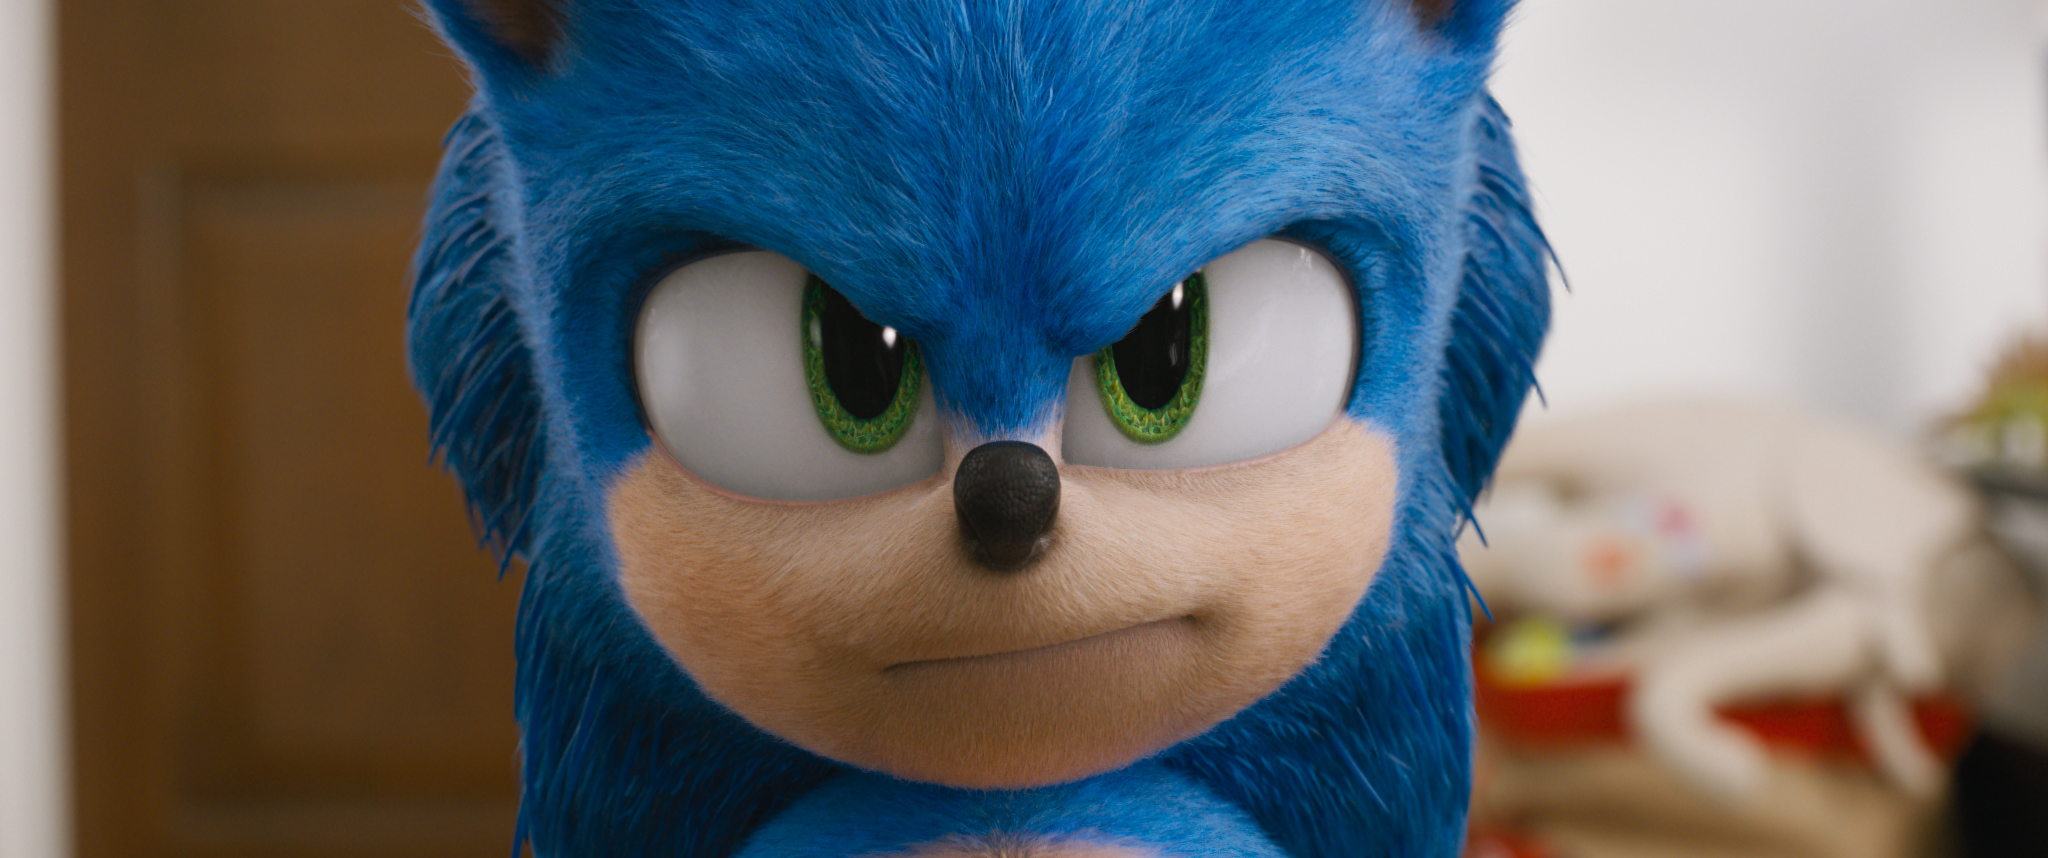 Sonic: O Filme  Imagens vazadas mostram um ouriço saído de pesadelos -  NerdBunker